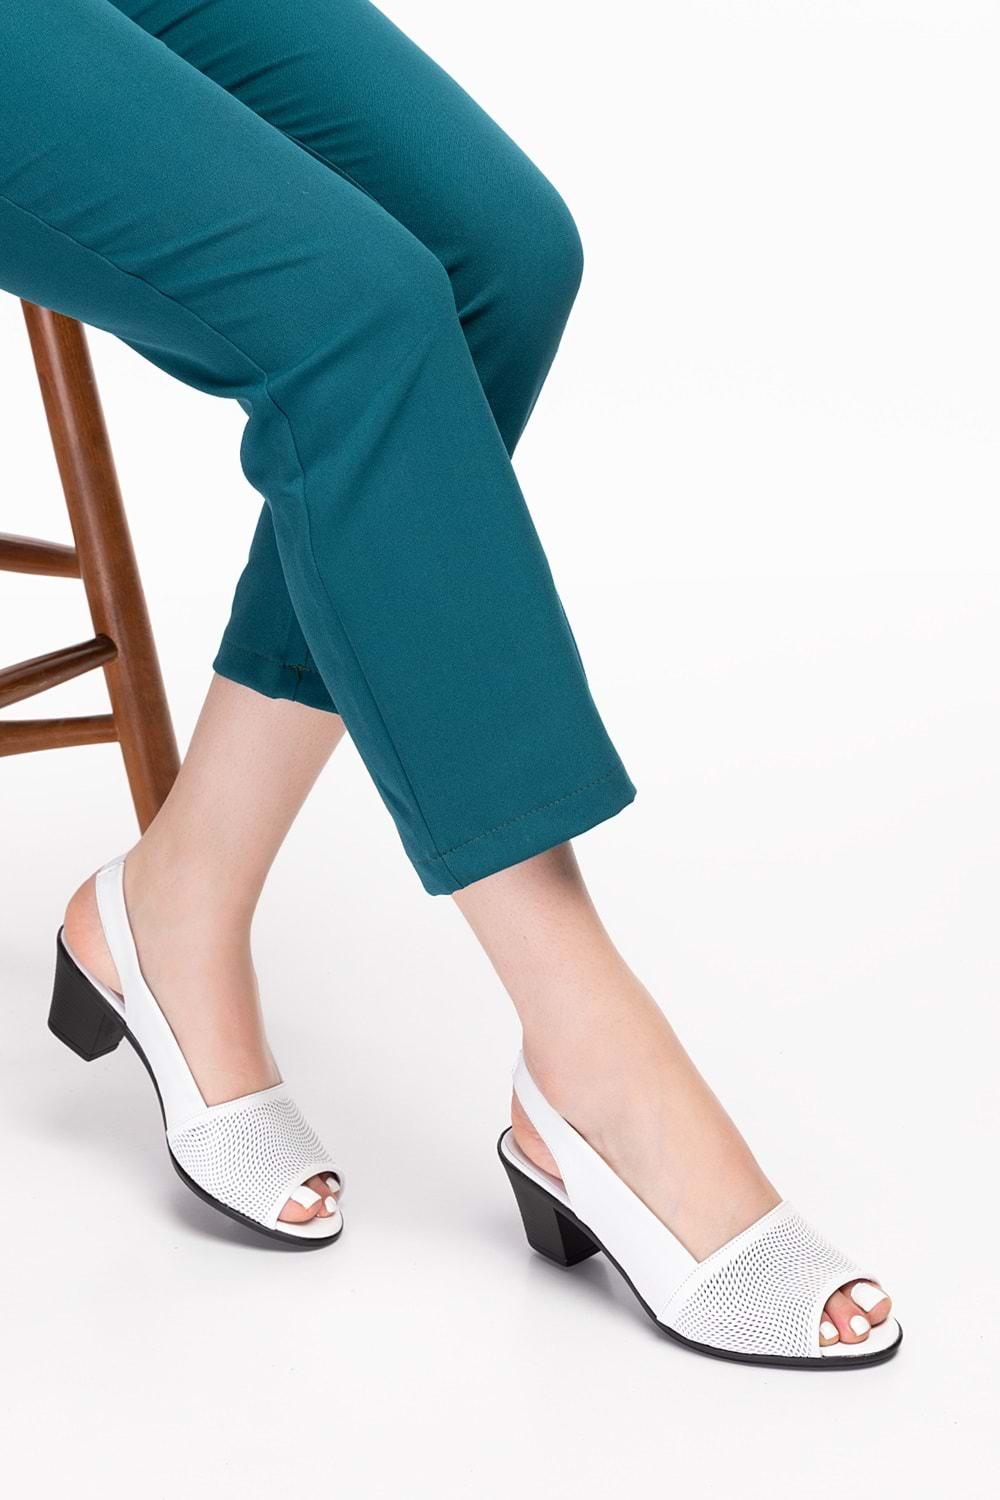 Gondol Kadın Hakiki Deri Klasik Topuklu Ayakkabı vdt.262 - Beyaz - 34